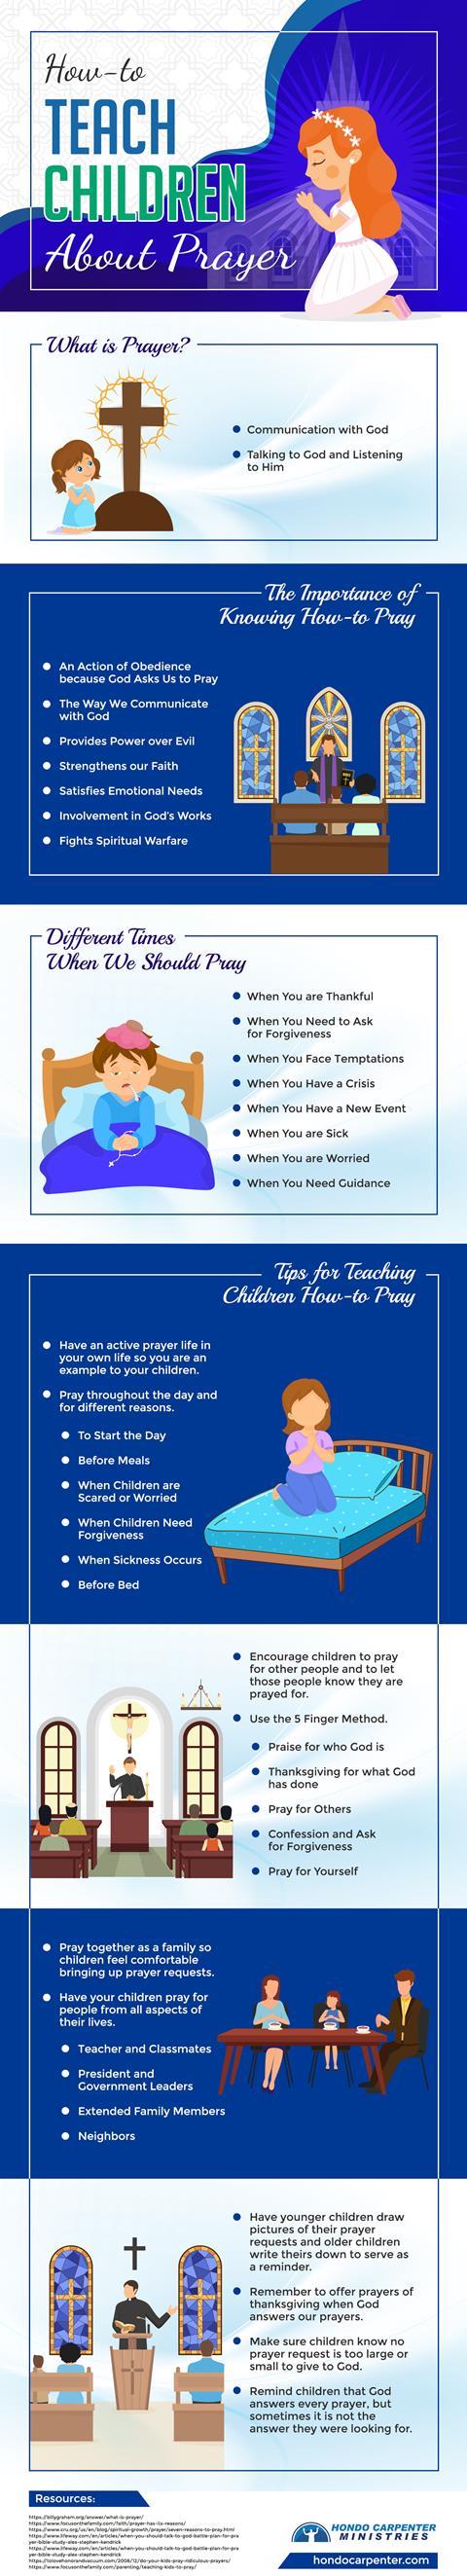 How-to-Teach-Children-About-Prayer.jpg